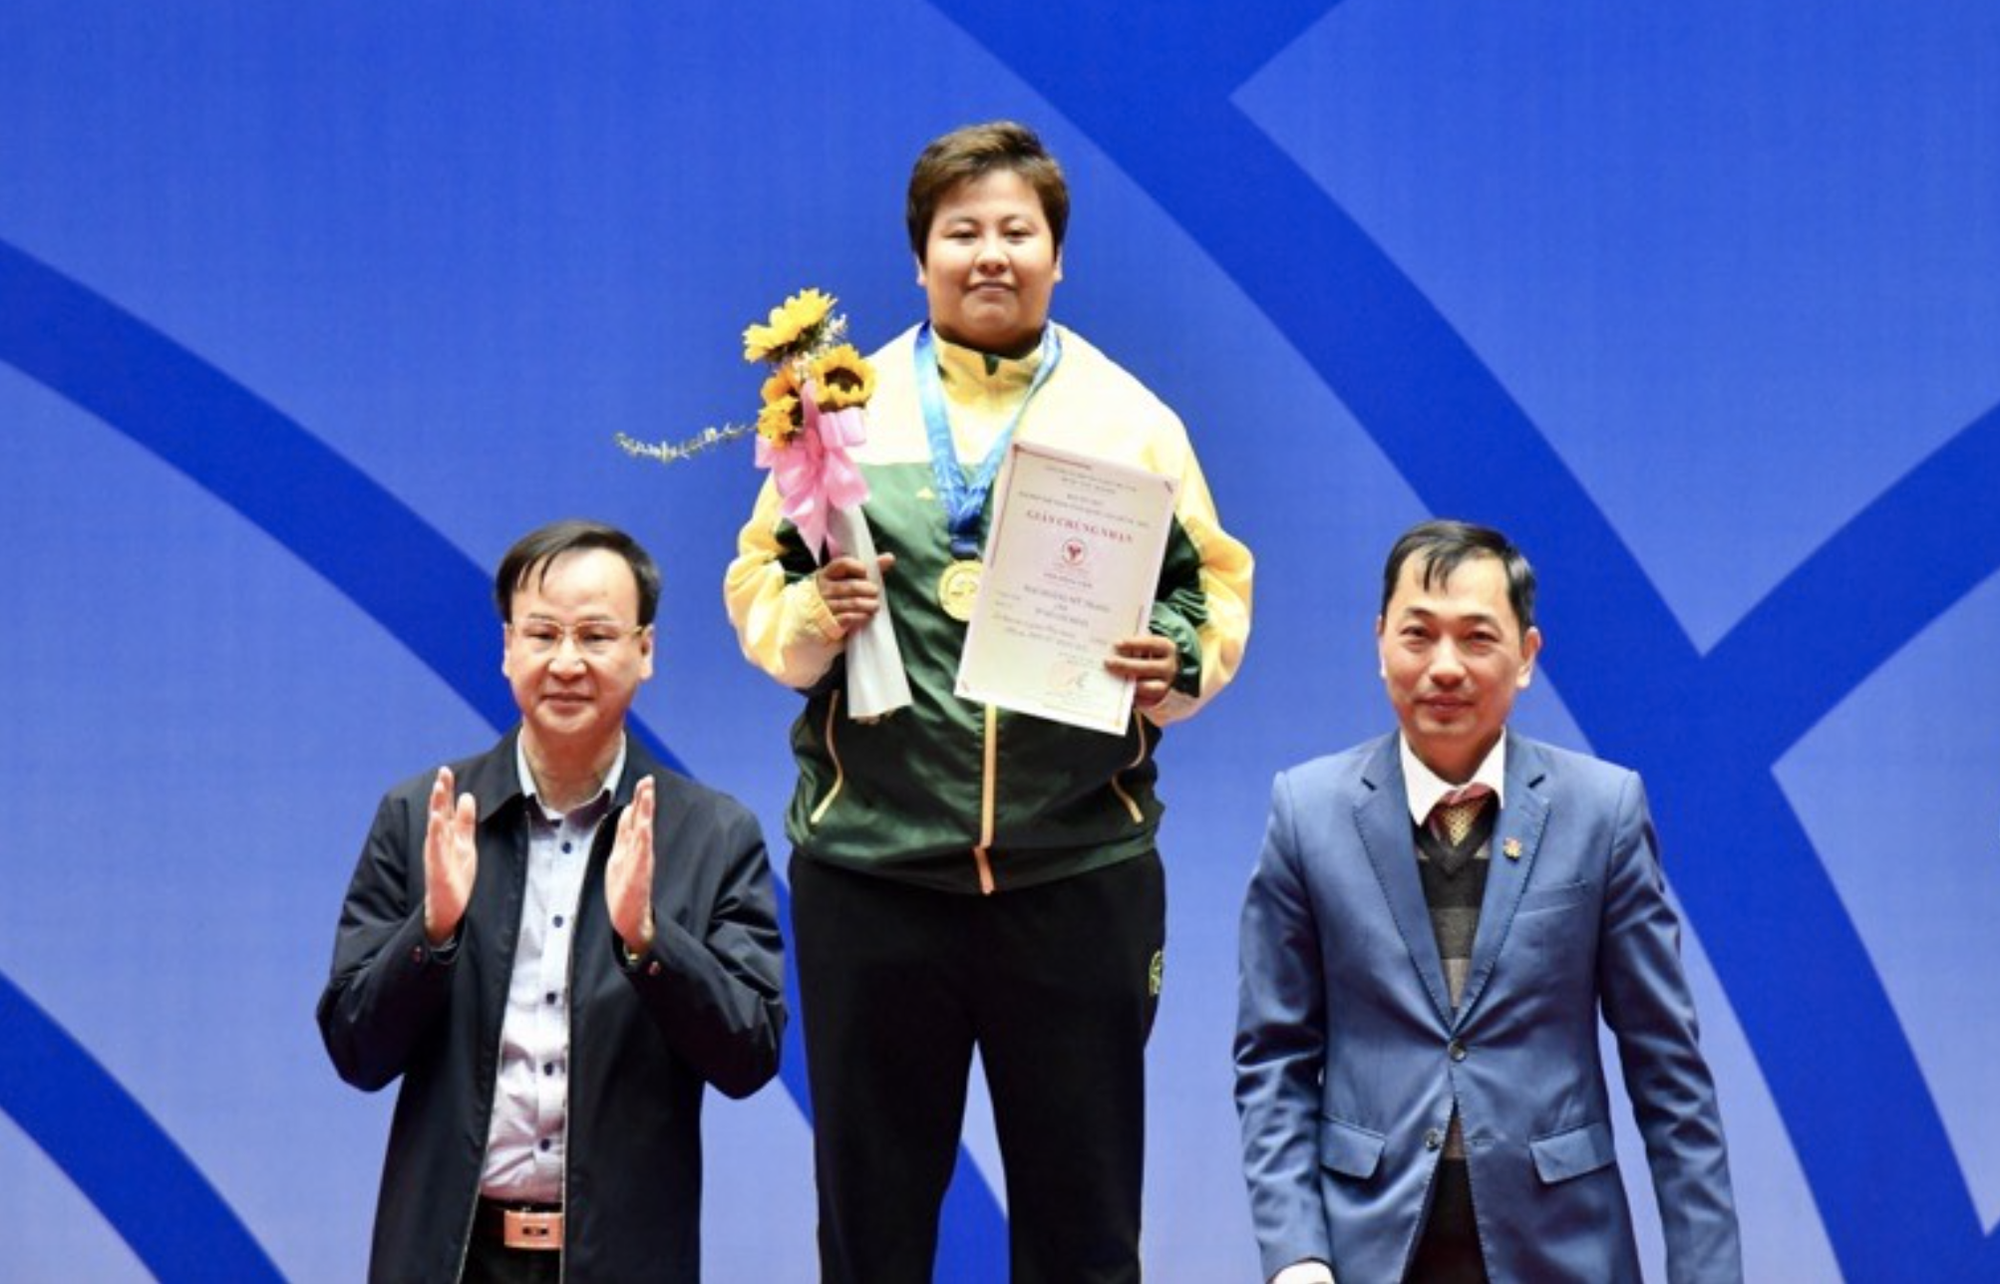 Mai Hoàng Mỹ Trang – Độc cô cầu bại 5 kỳ Đại hội thể thao quốc gia - Ảnh 2.